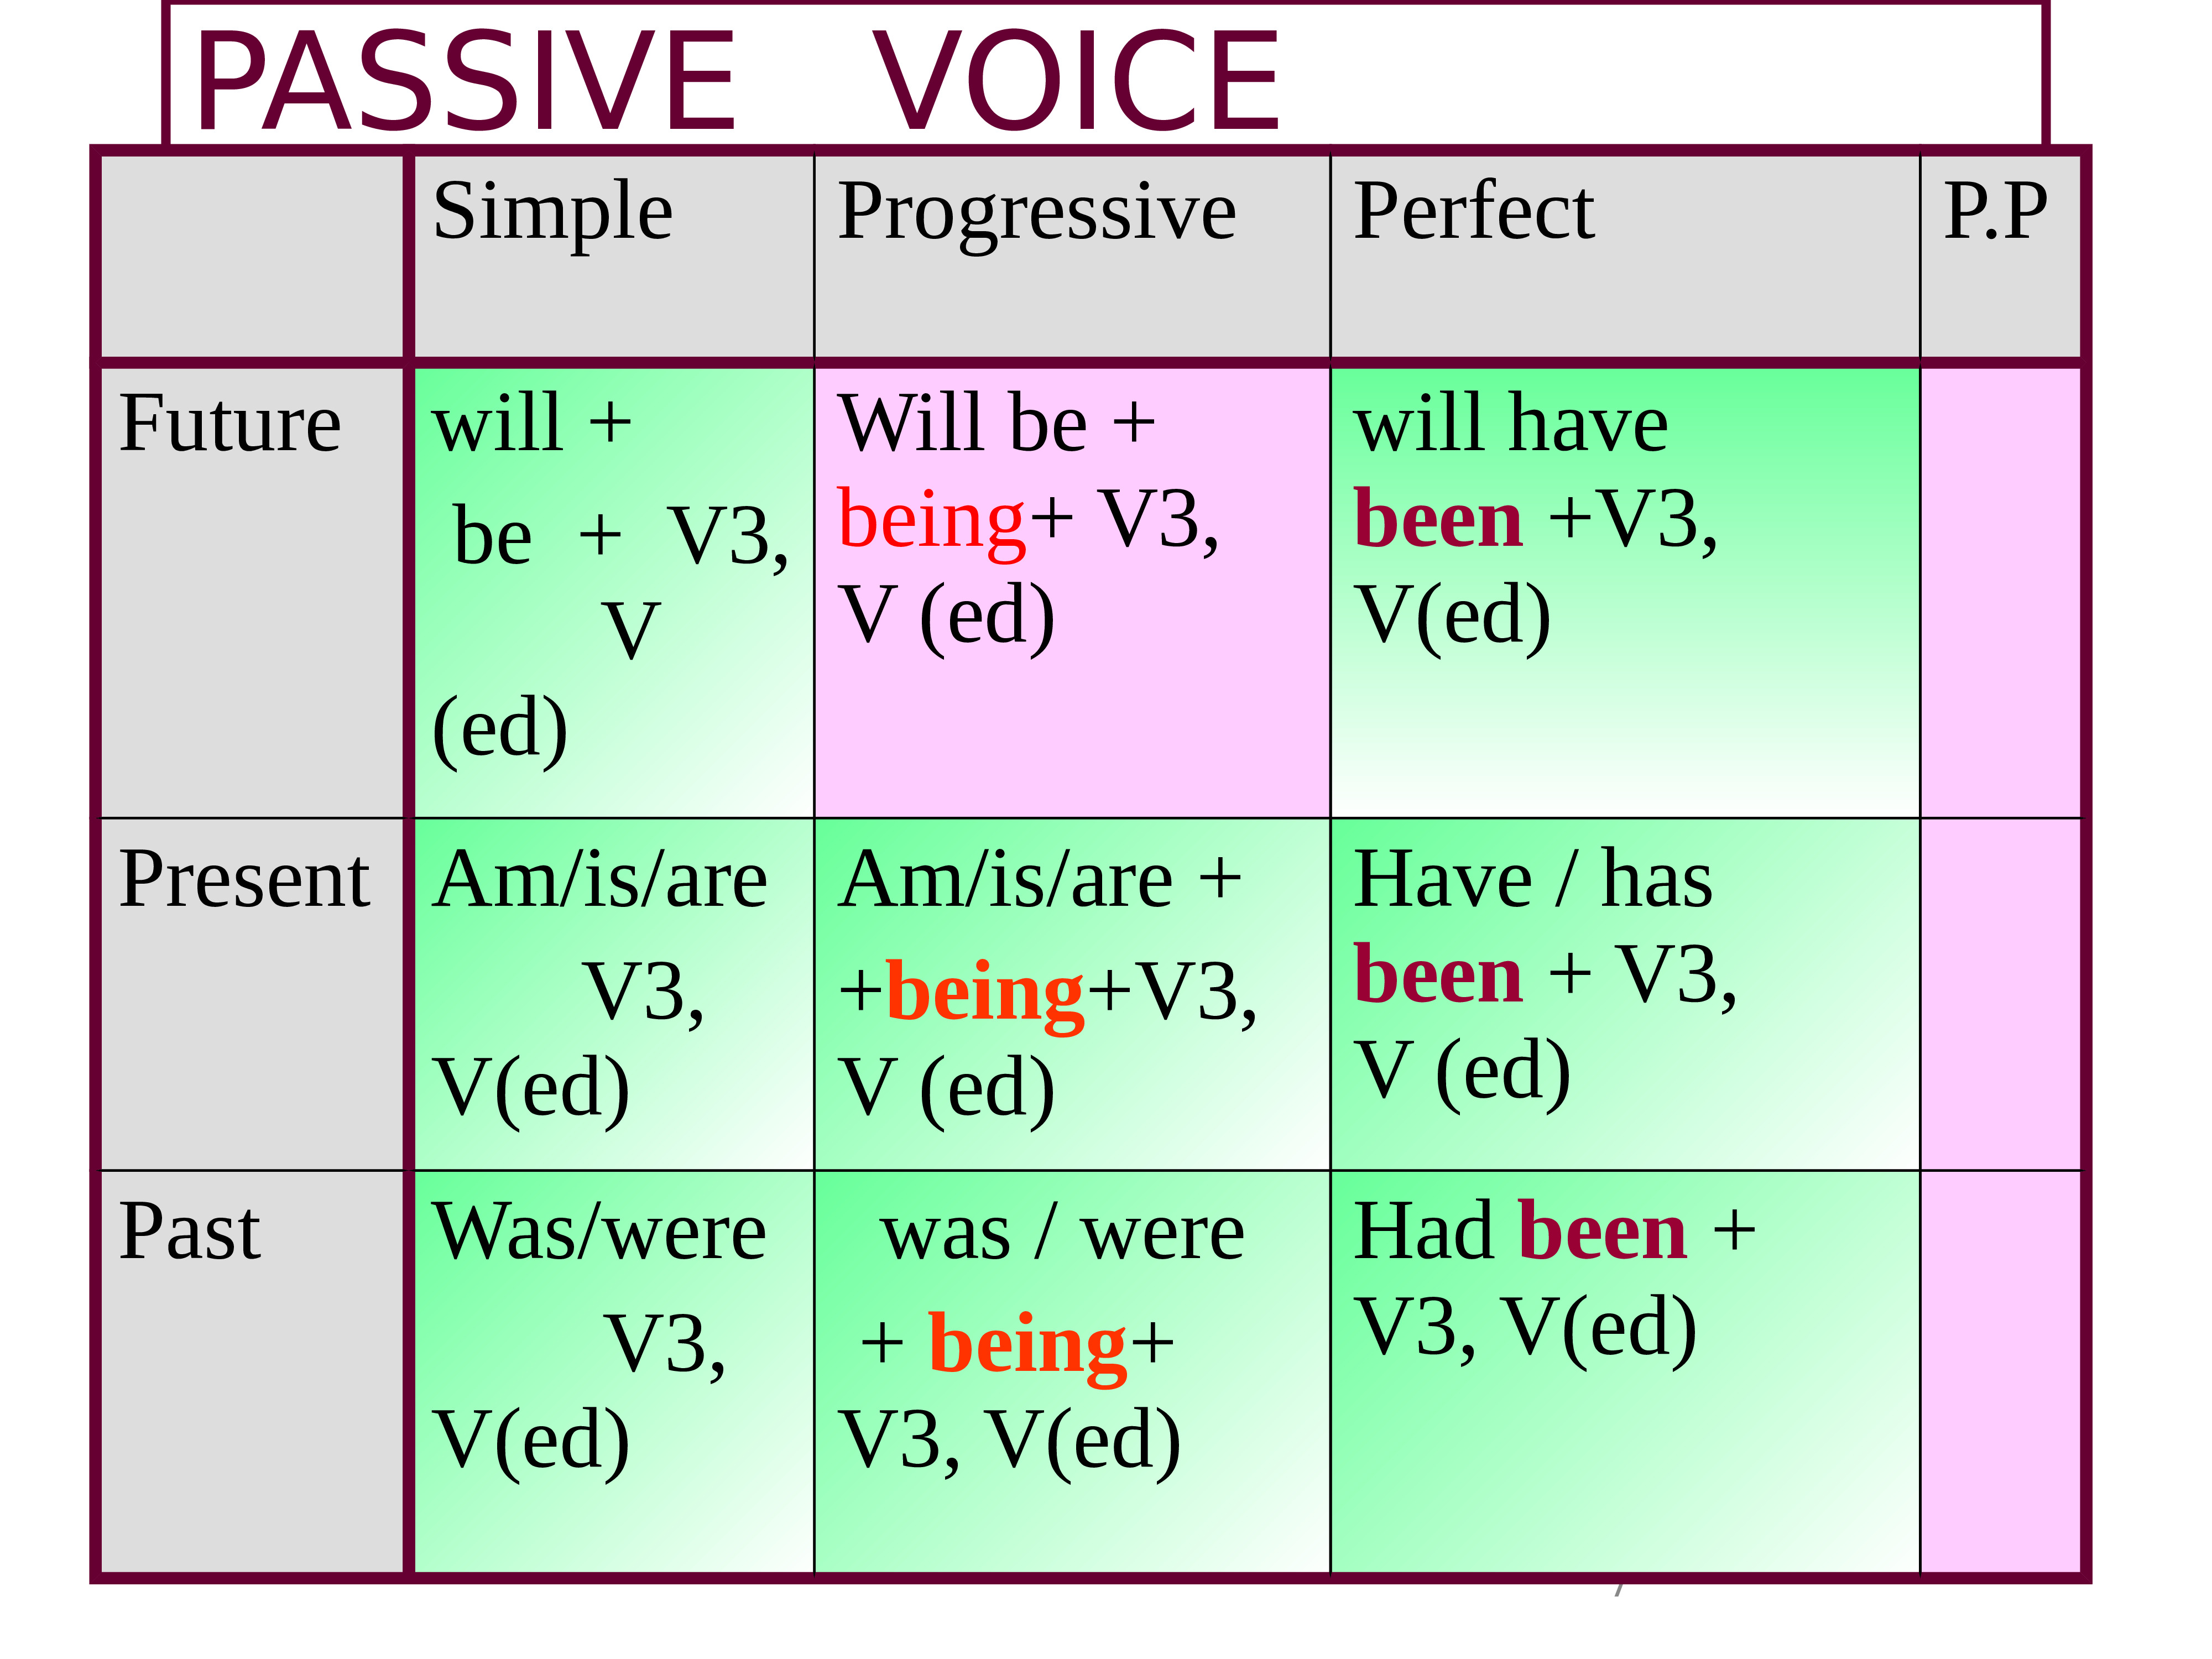 Passive voice stories. Passive страдательный залог. Пассивный залог (Passive Voice). Формула present Passive Voice. Формула пассивного залога в английском.